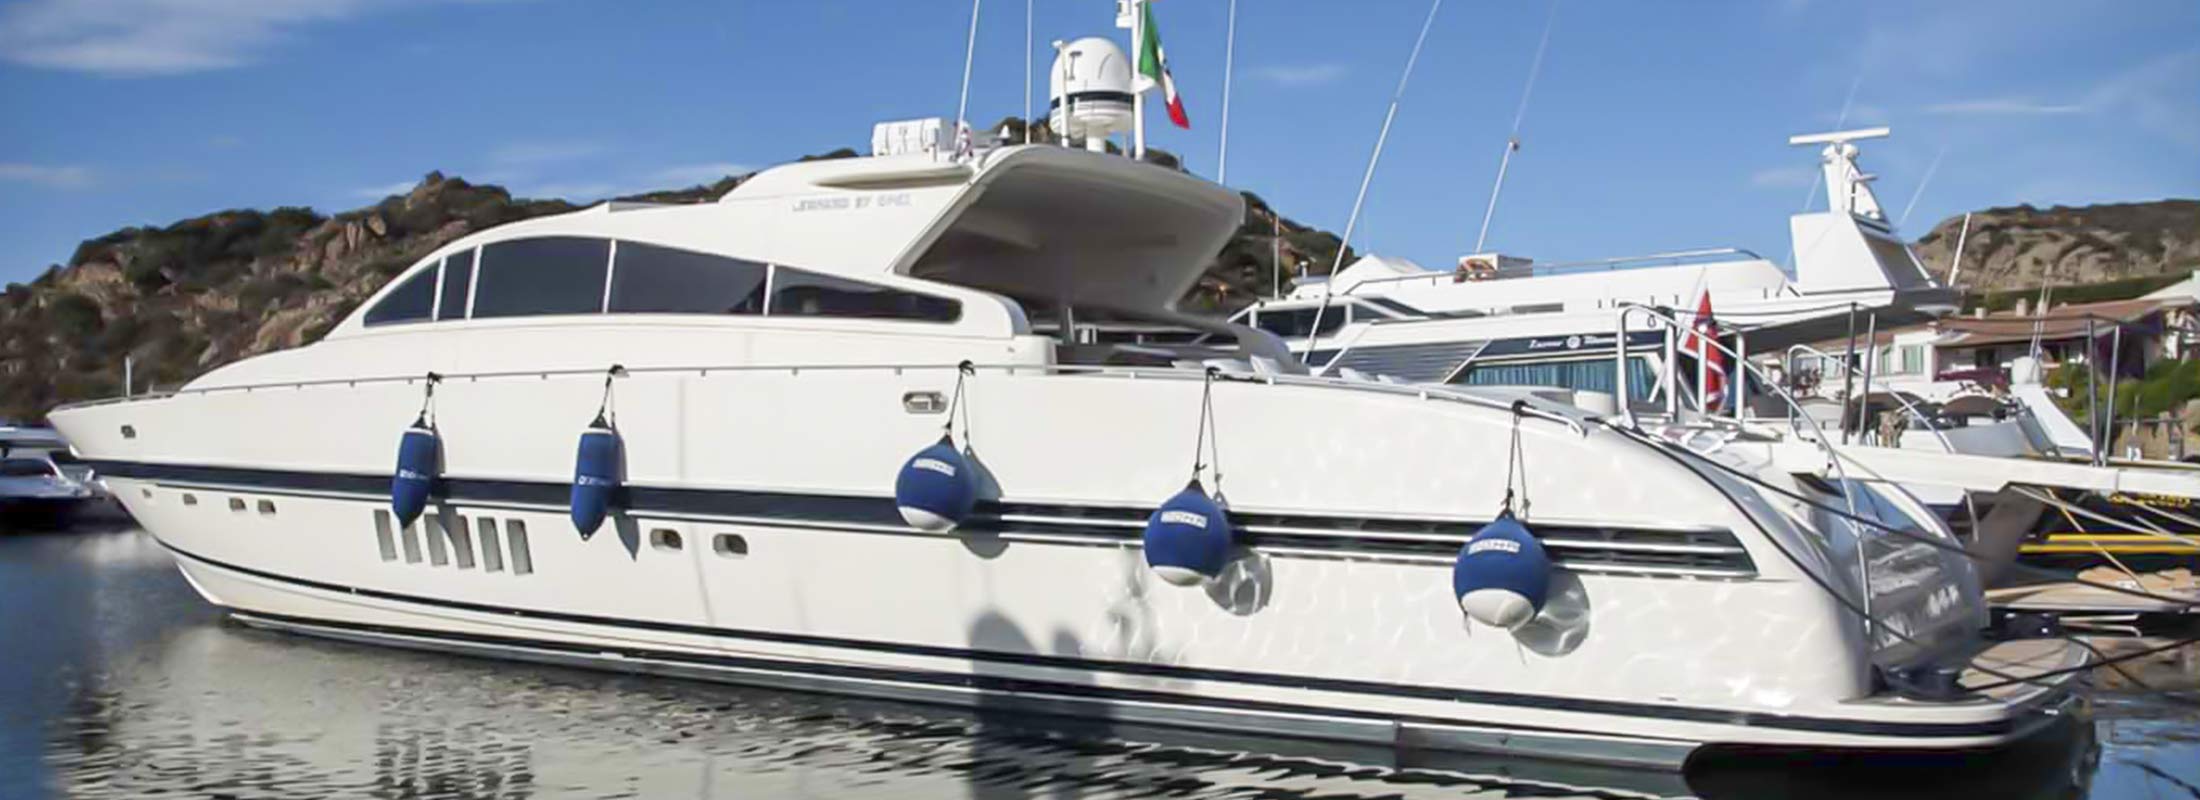 Doha Motor Yacht for Charter Mediterranean slider 2